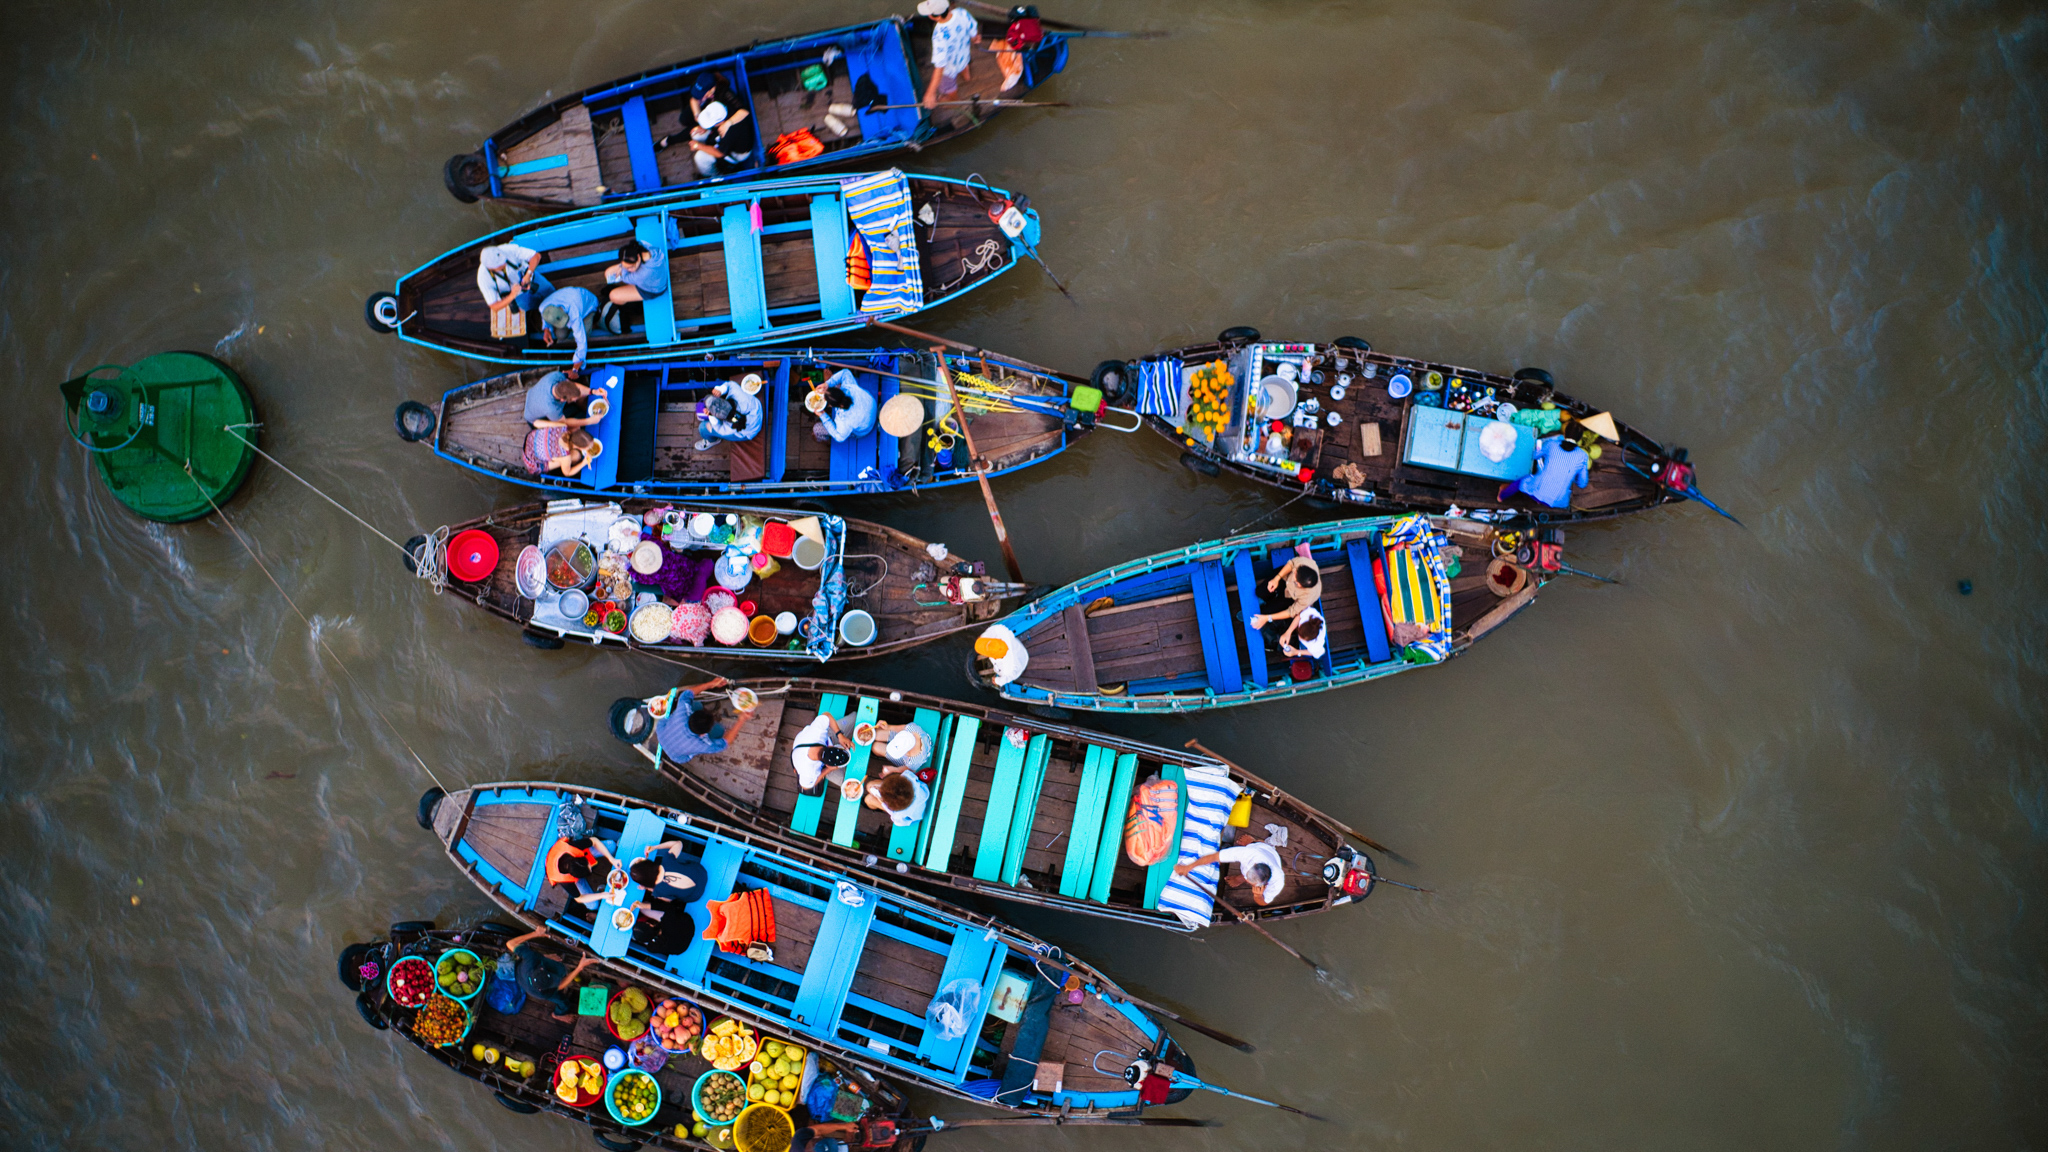 Visit the active Cai Rang floating market